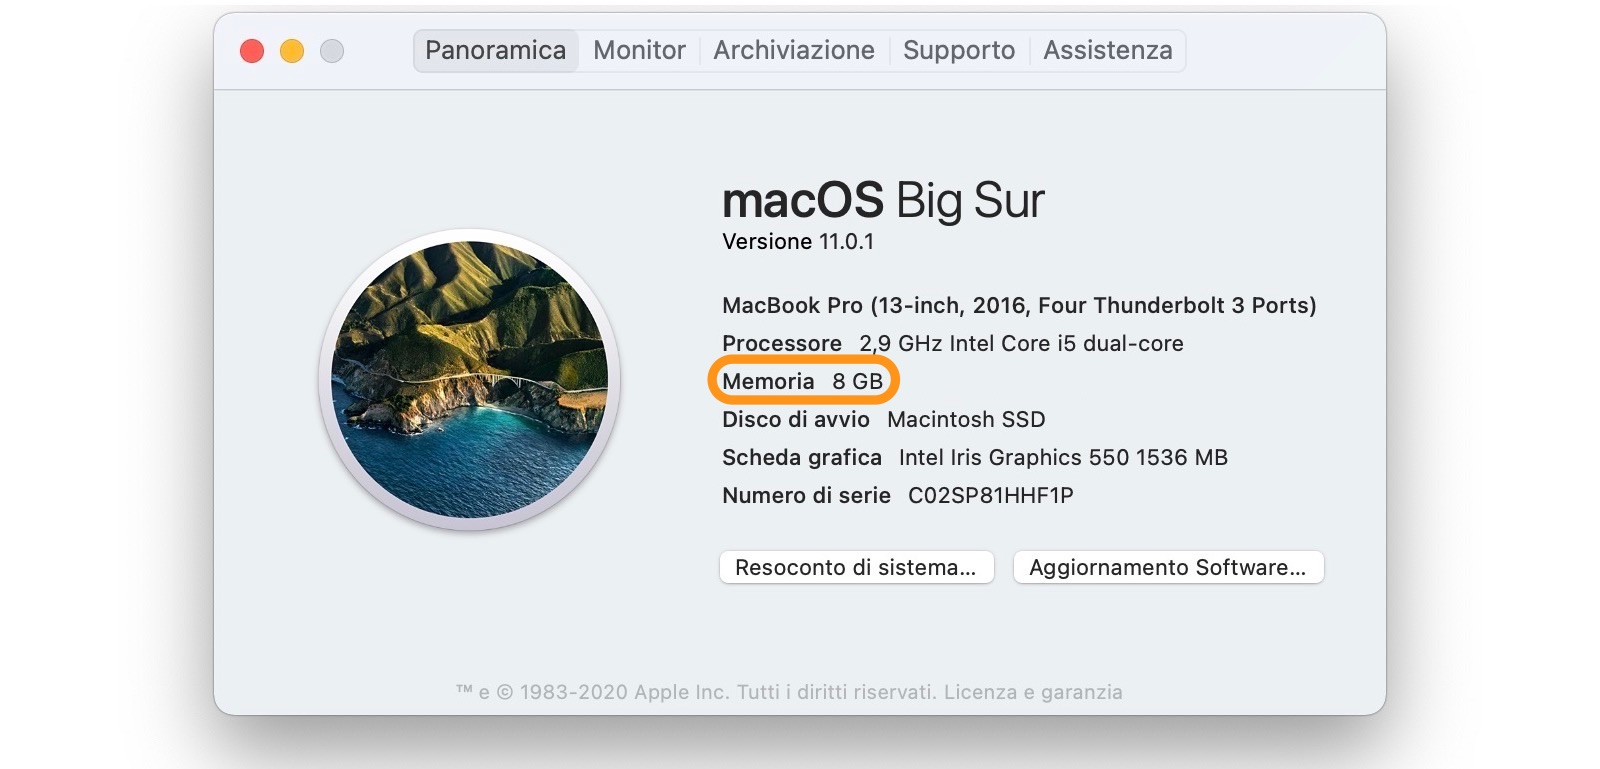 Conoscere Quantitativo Memoria Installata su Mac